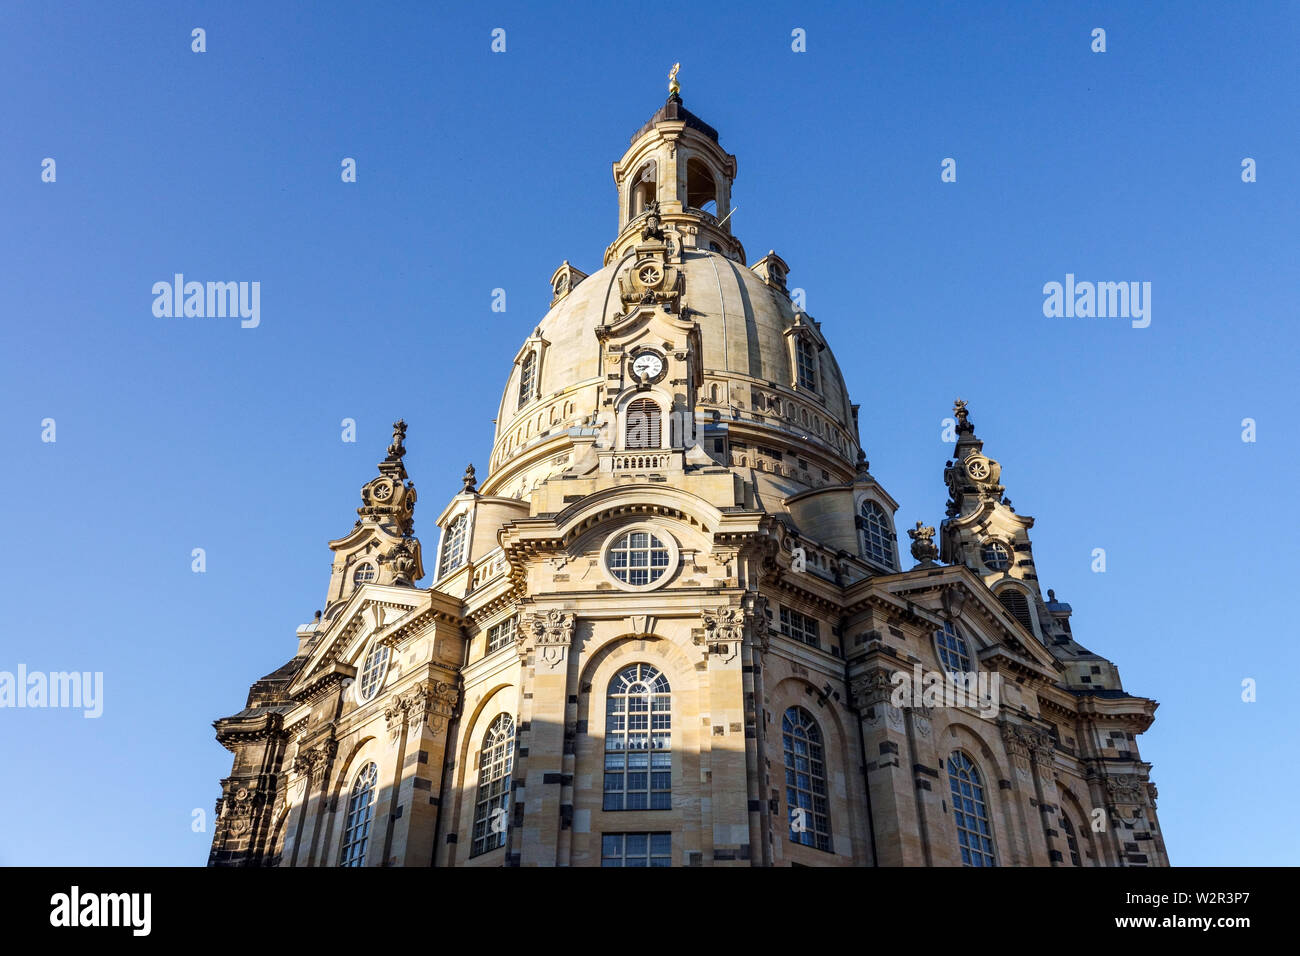 Journée ensoleillée, coupole de l'église Frauenkirche Dresde Saxe Allemagne Europe Banque D'Images